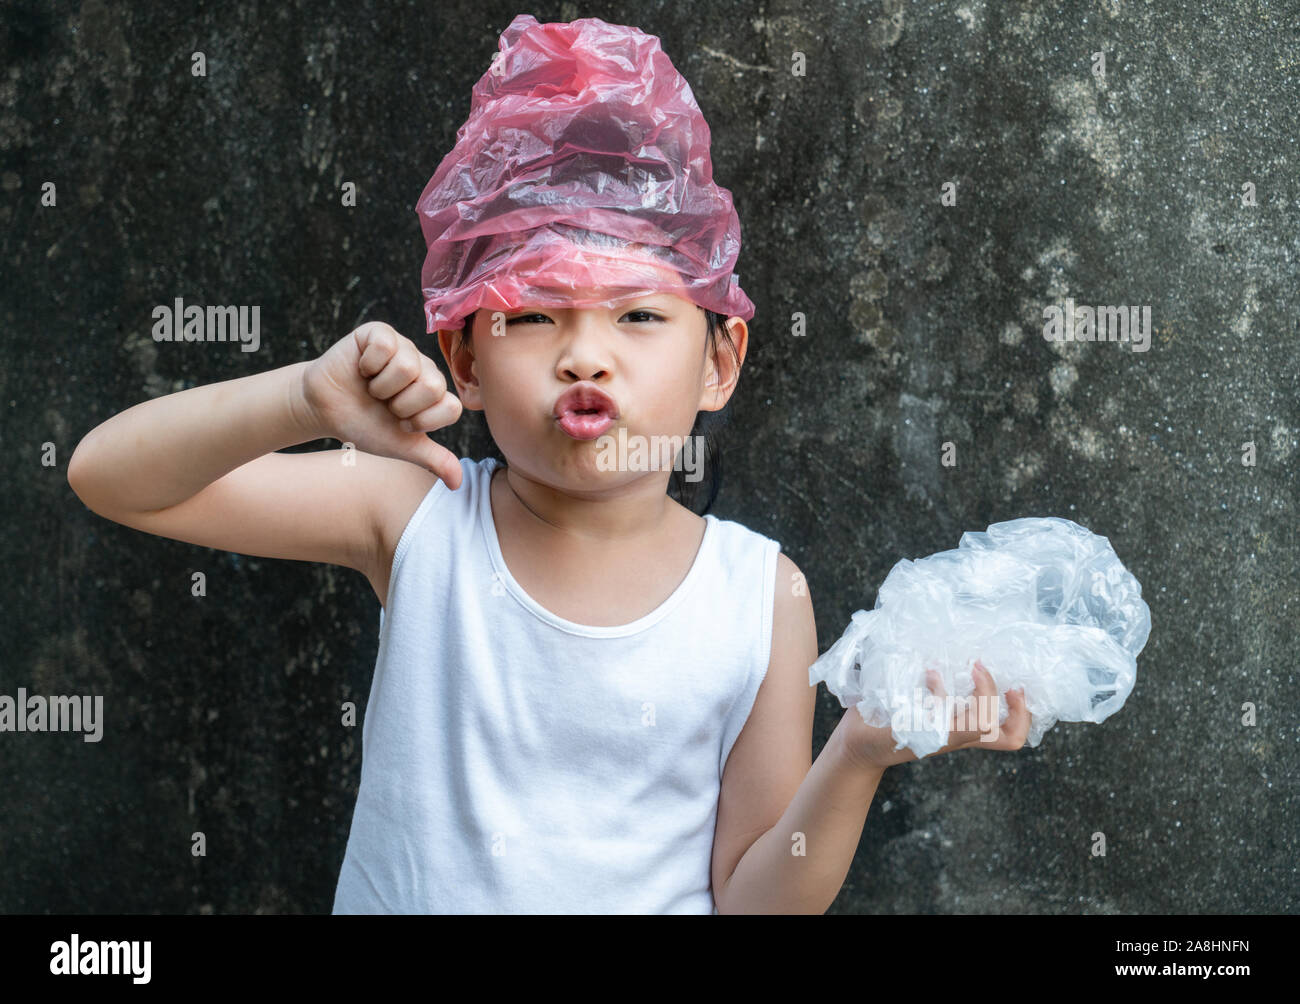 Süße kleine Mädchen posiert mit Plastiktüten. Konzept für die Anwendung von Plastikbeutel. Stockfoto